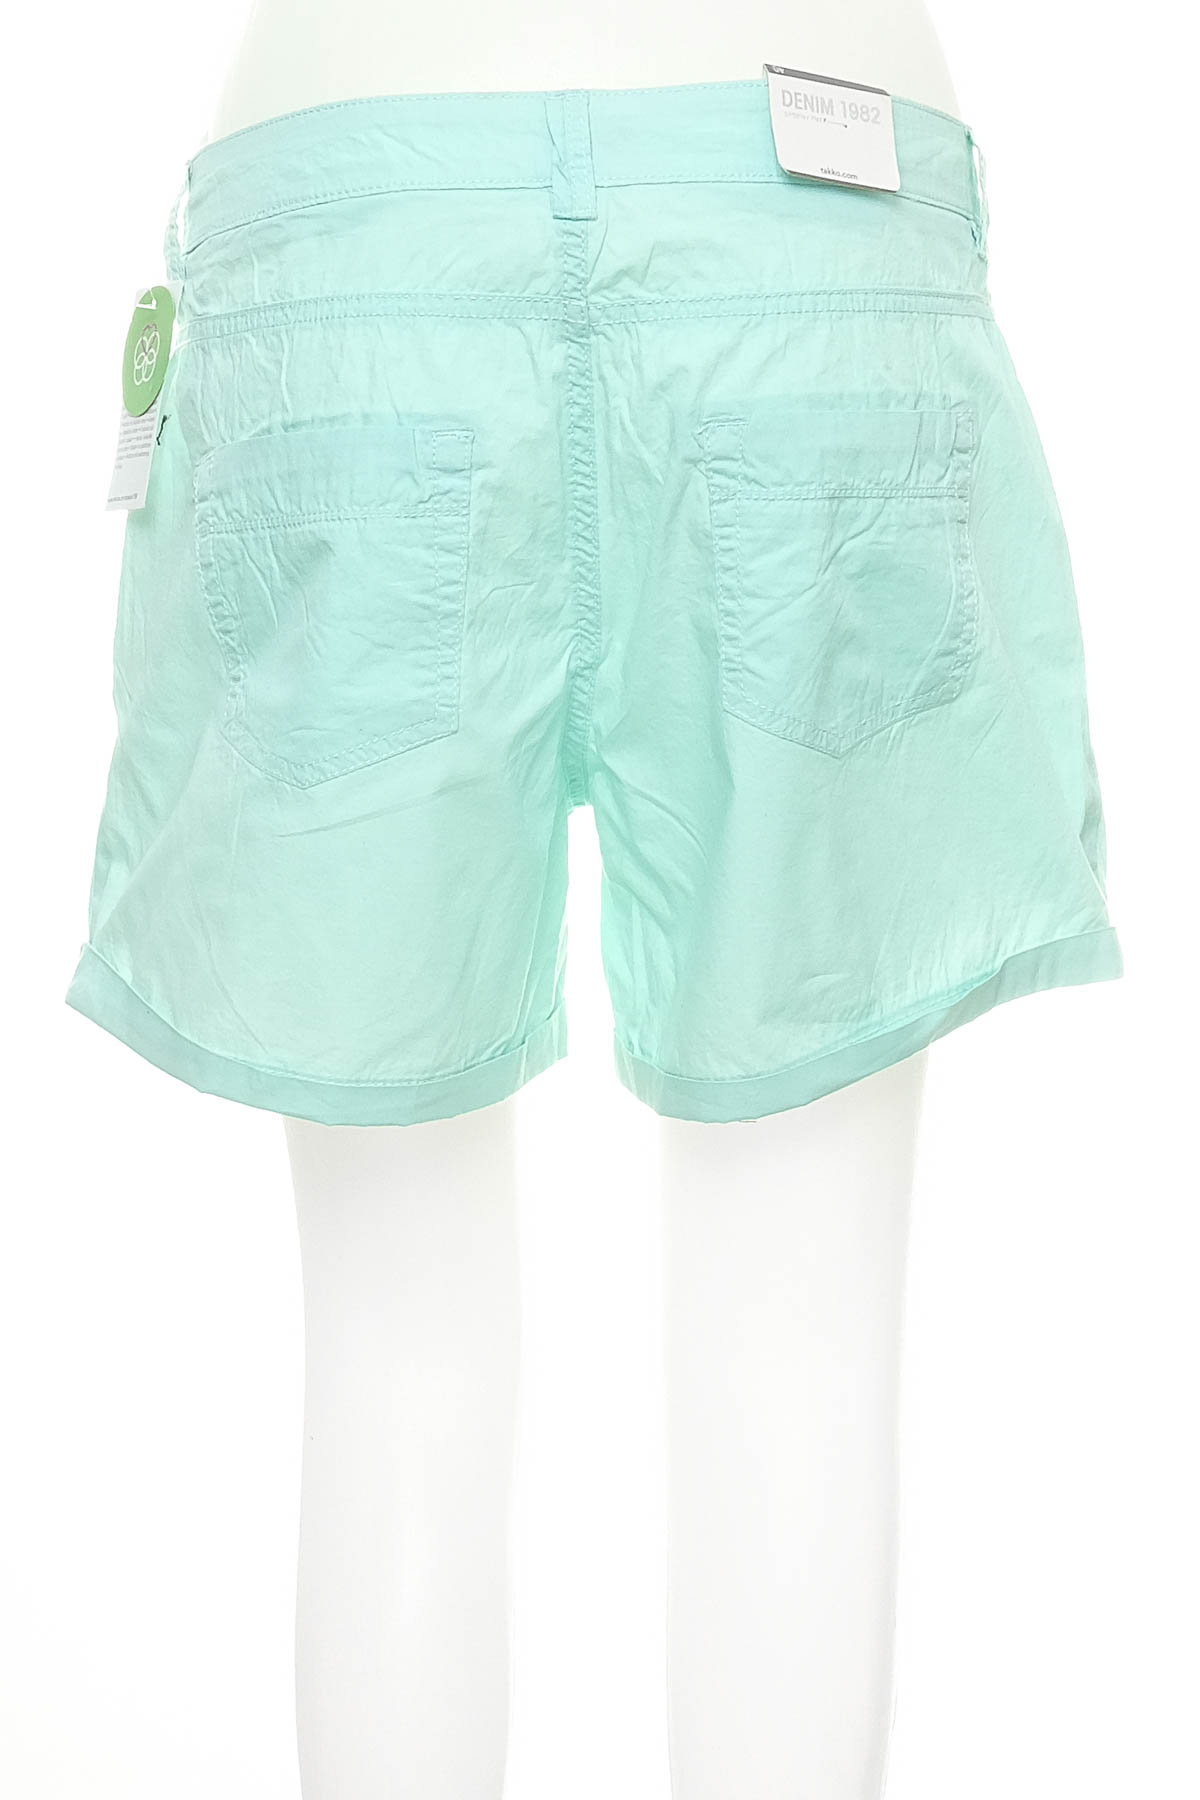 Female shorts - Denim 1982 - 1